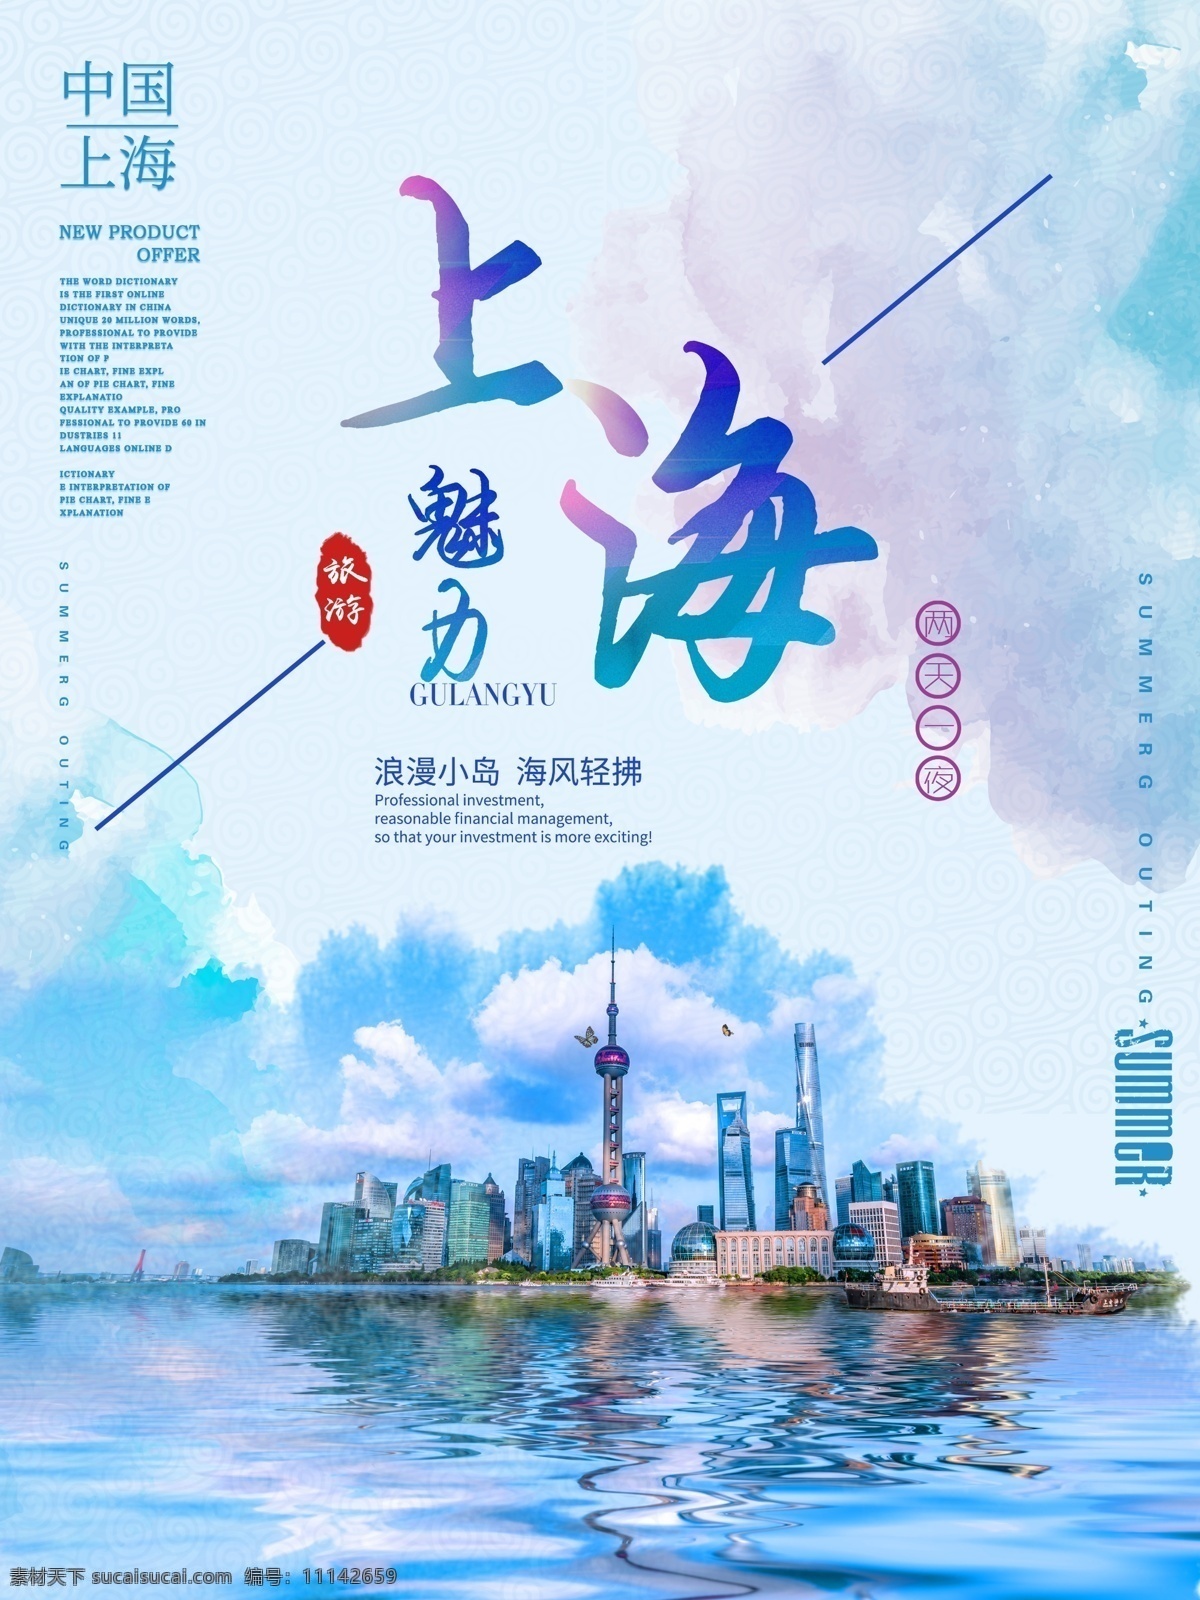 旅游海报 创意 大气 简约 魅力 上海旅游 海报 水彩 蓝色 渐变 自然景观 自然风光 浪漫小岛